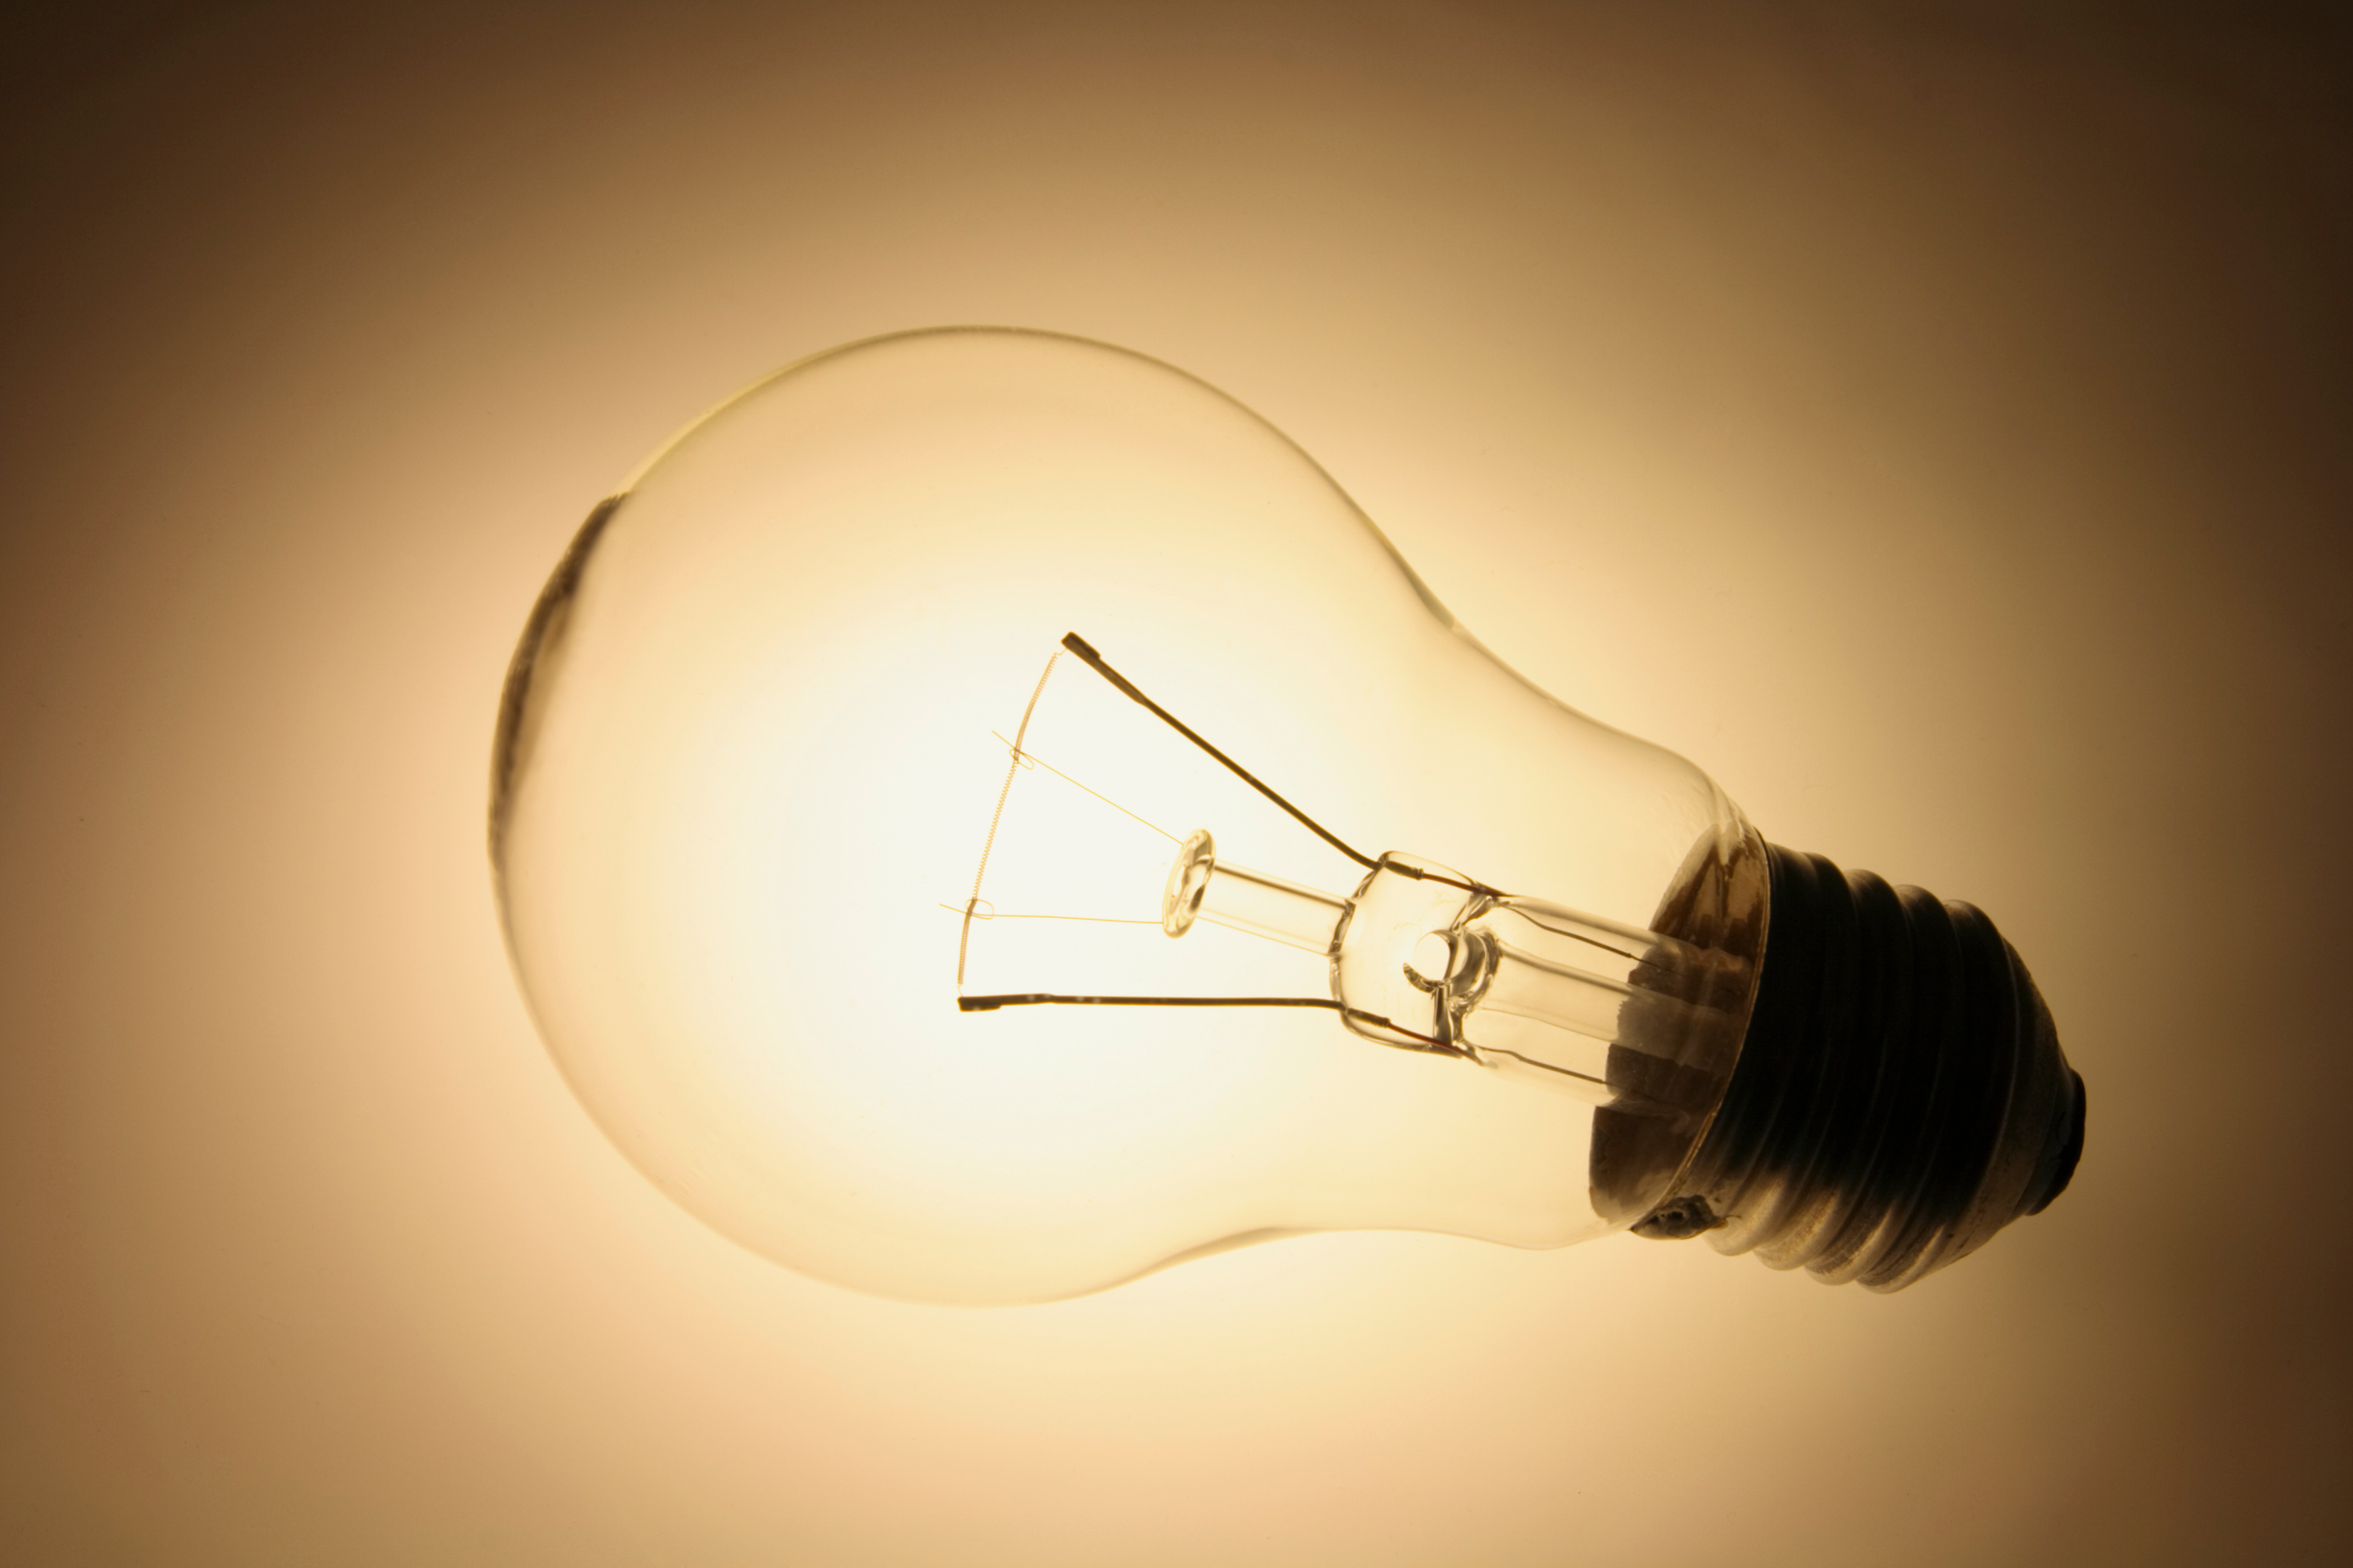 Le filament de cette ampoule, incandescent, émet une lumière jaune. © Silkstock, Adobe Stock